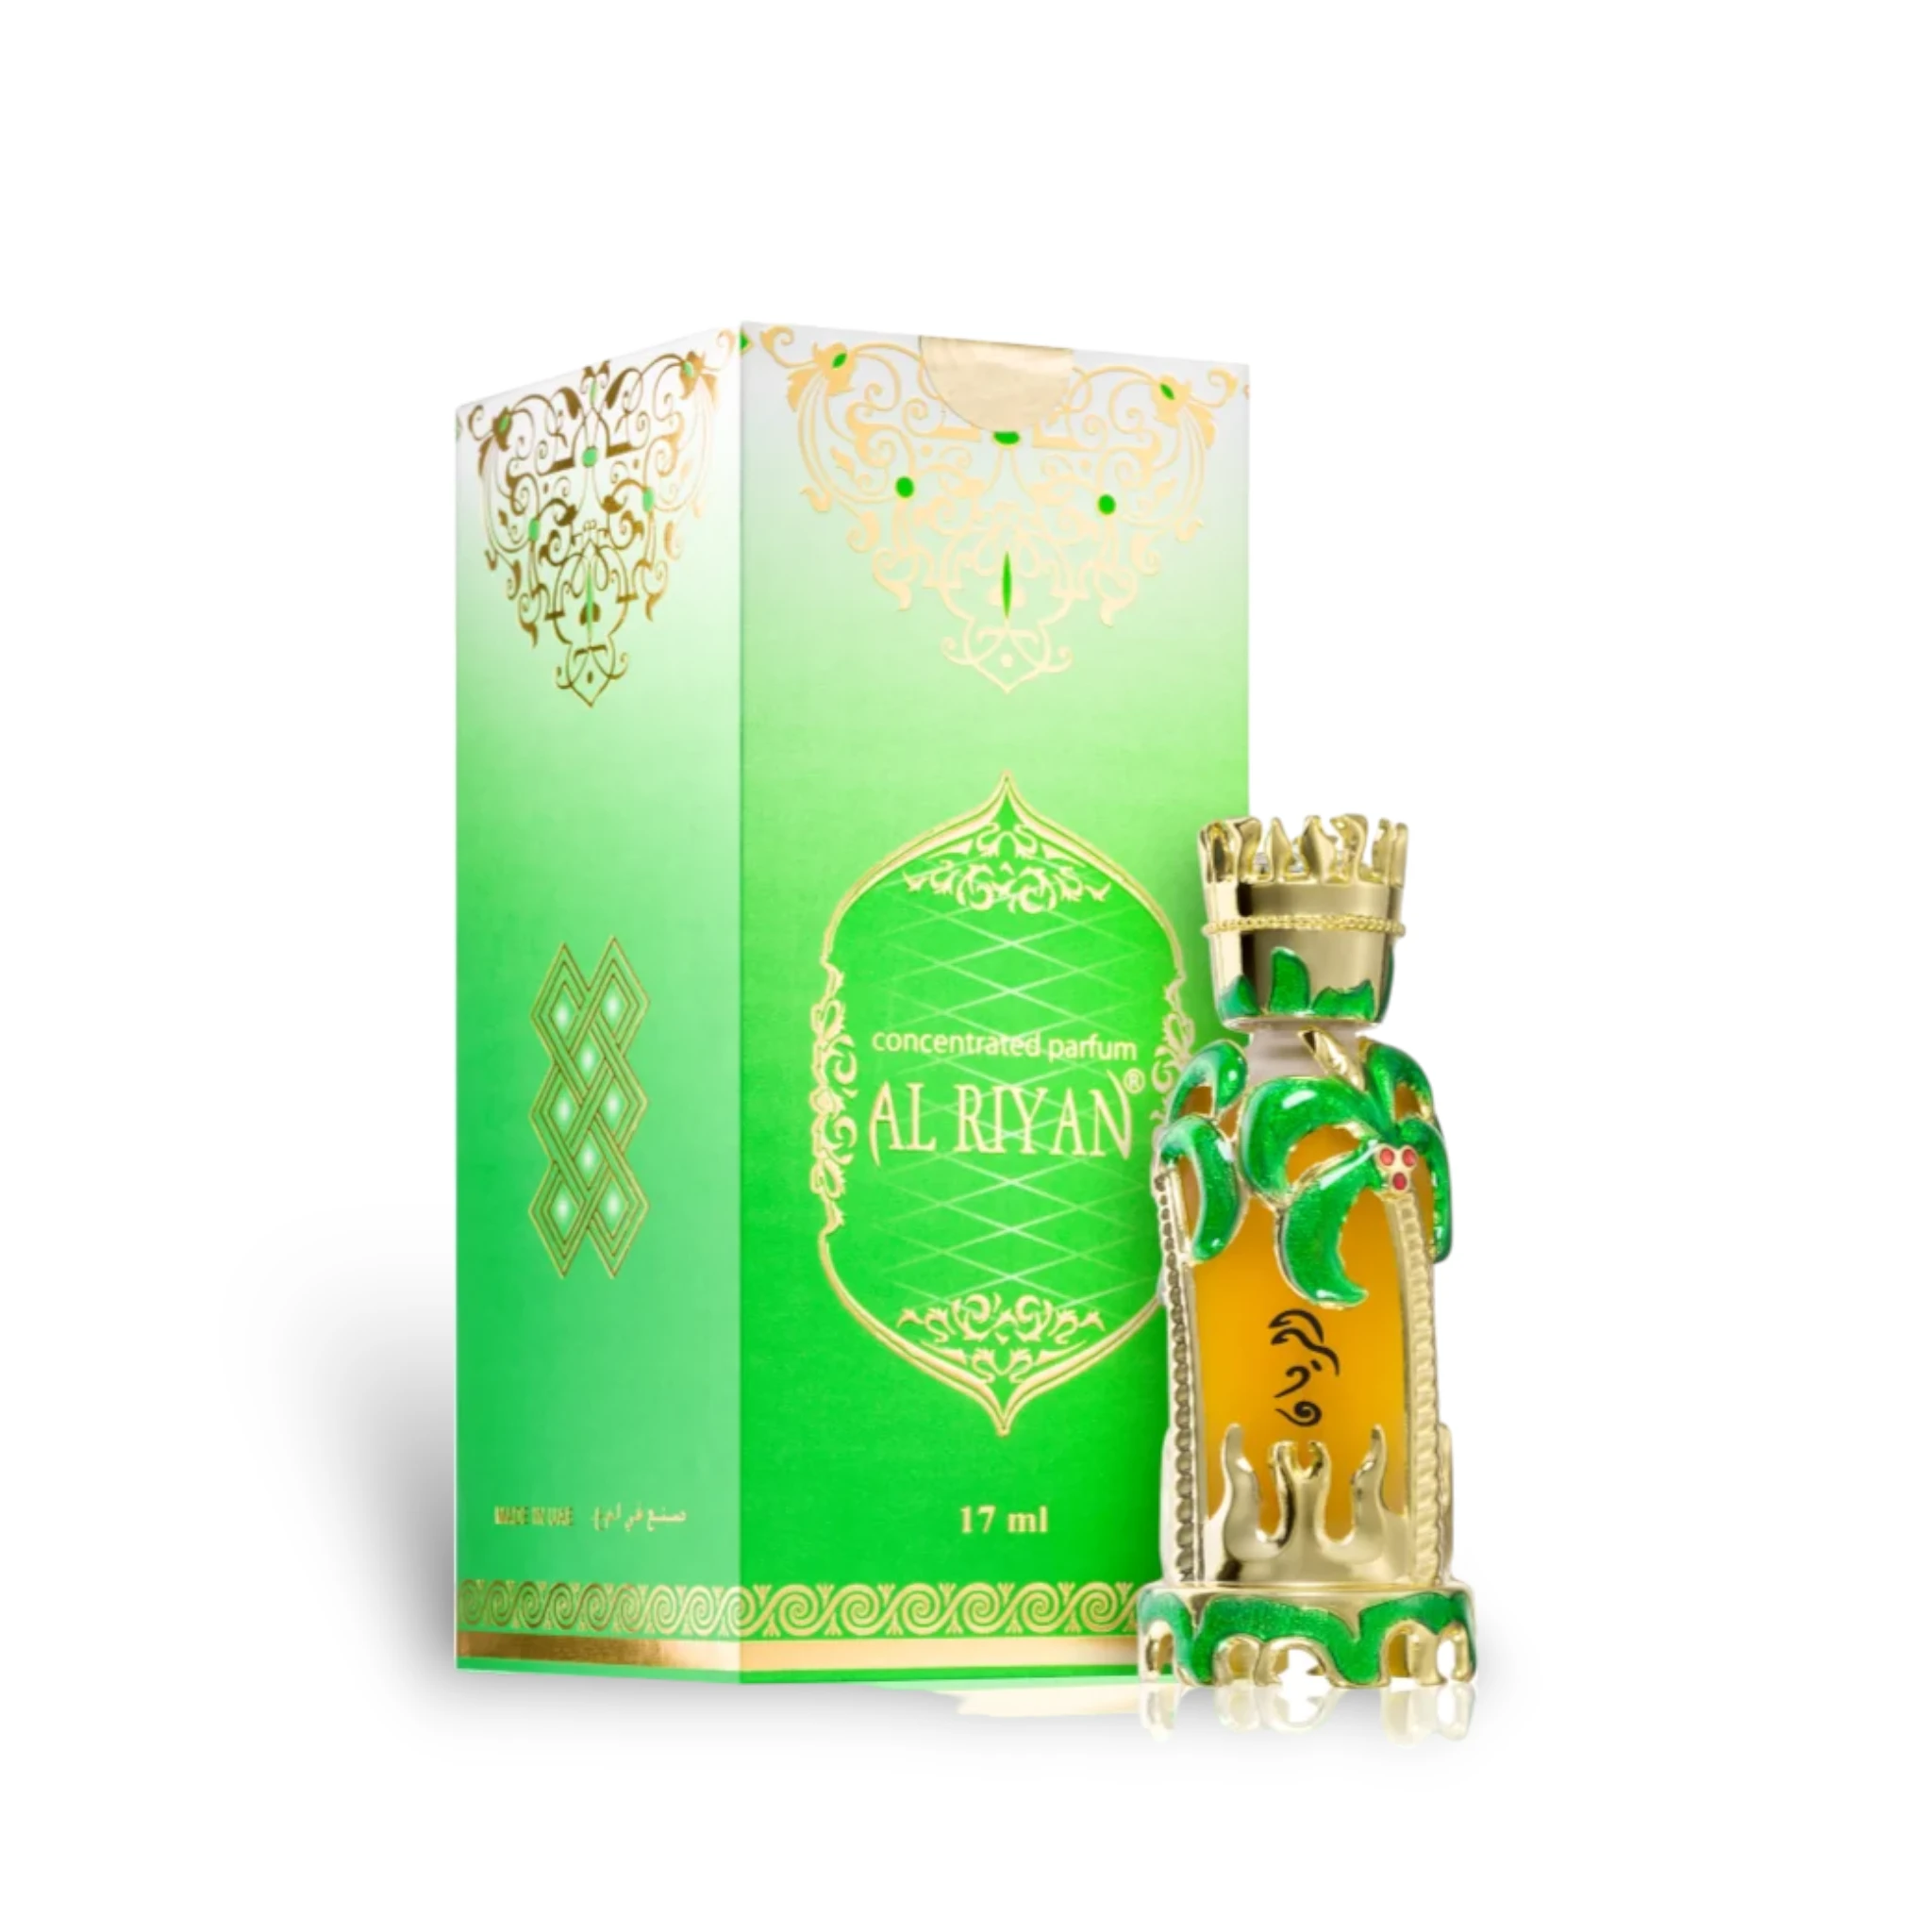 Al Riyan Concentrated Perfume Oil Attar 17Ml By Khadlaj